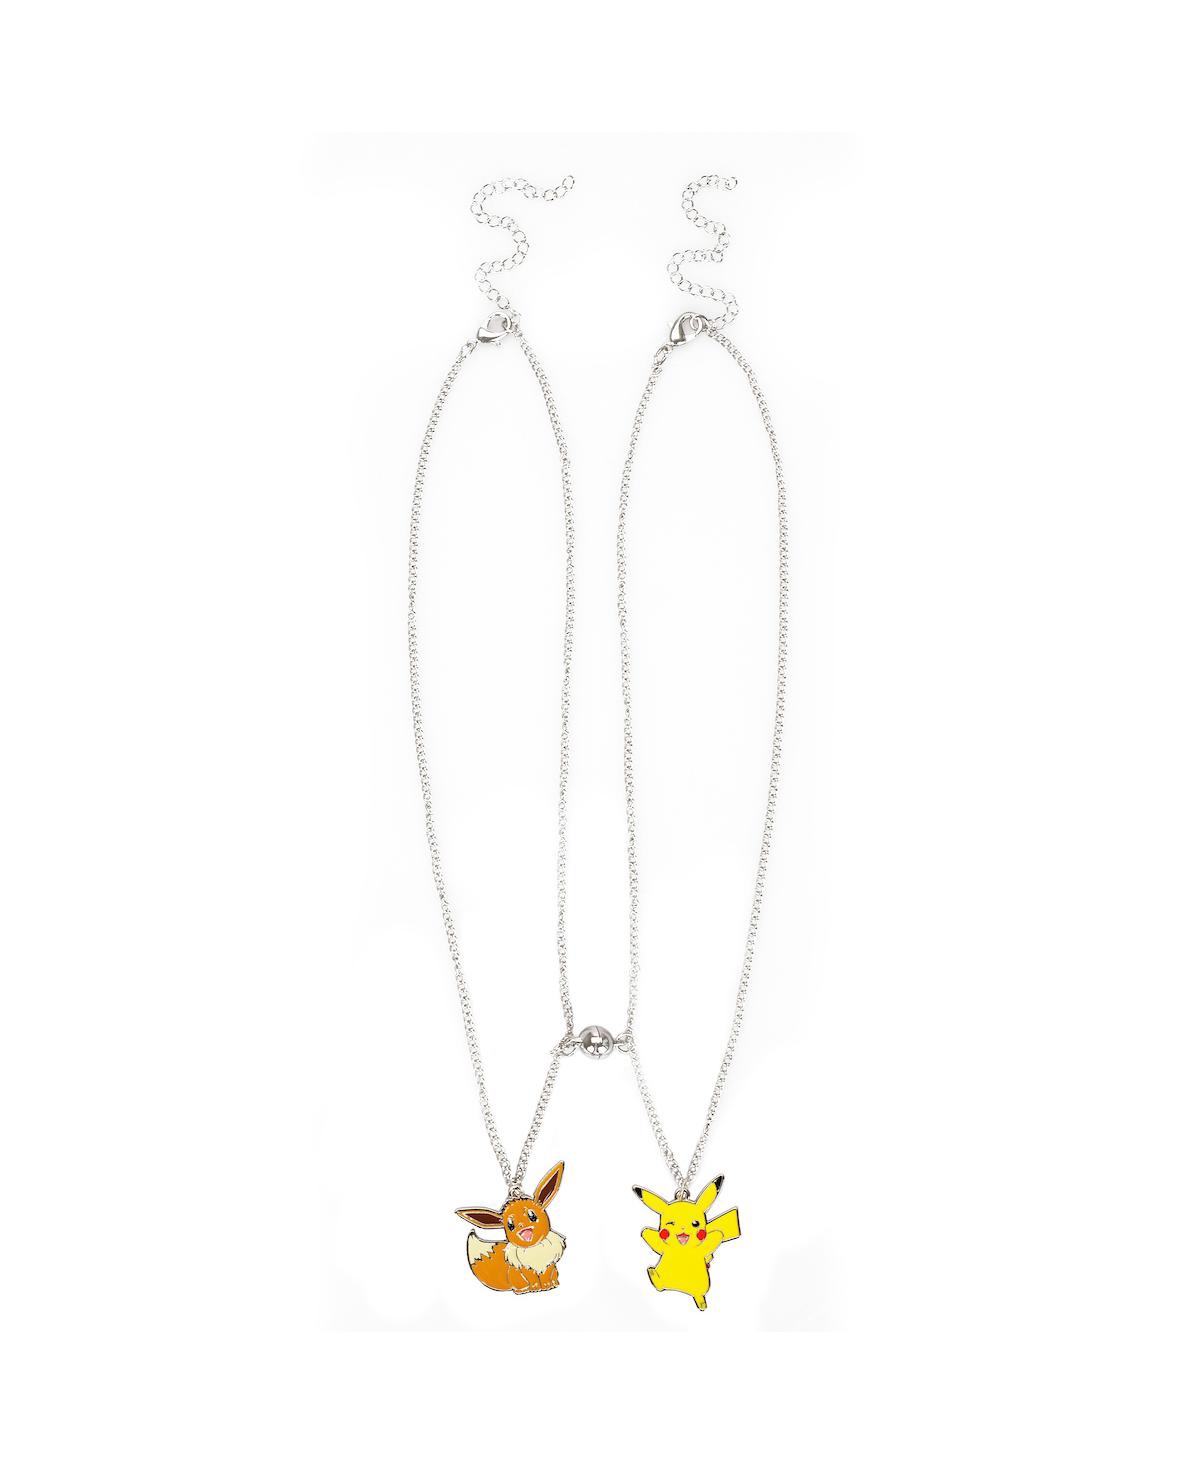 Pikachu & Eevee Besties Magnetic Bead Necklace Set - Multicolored